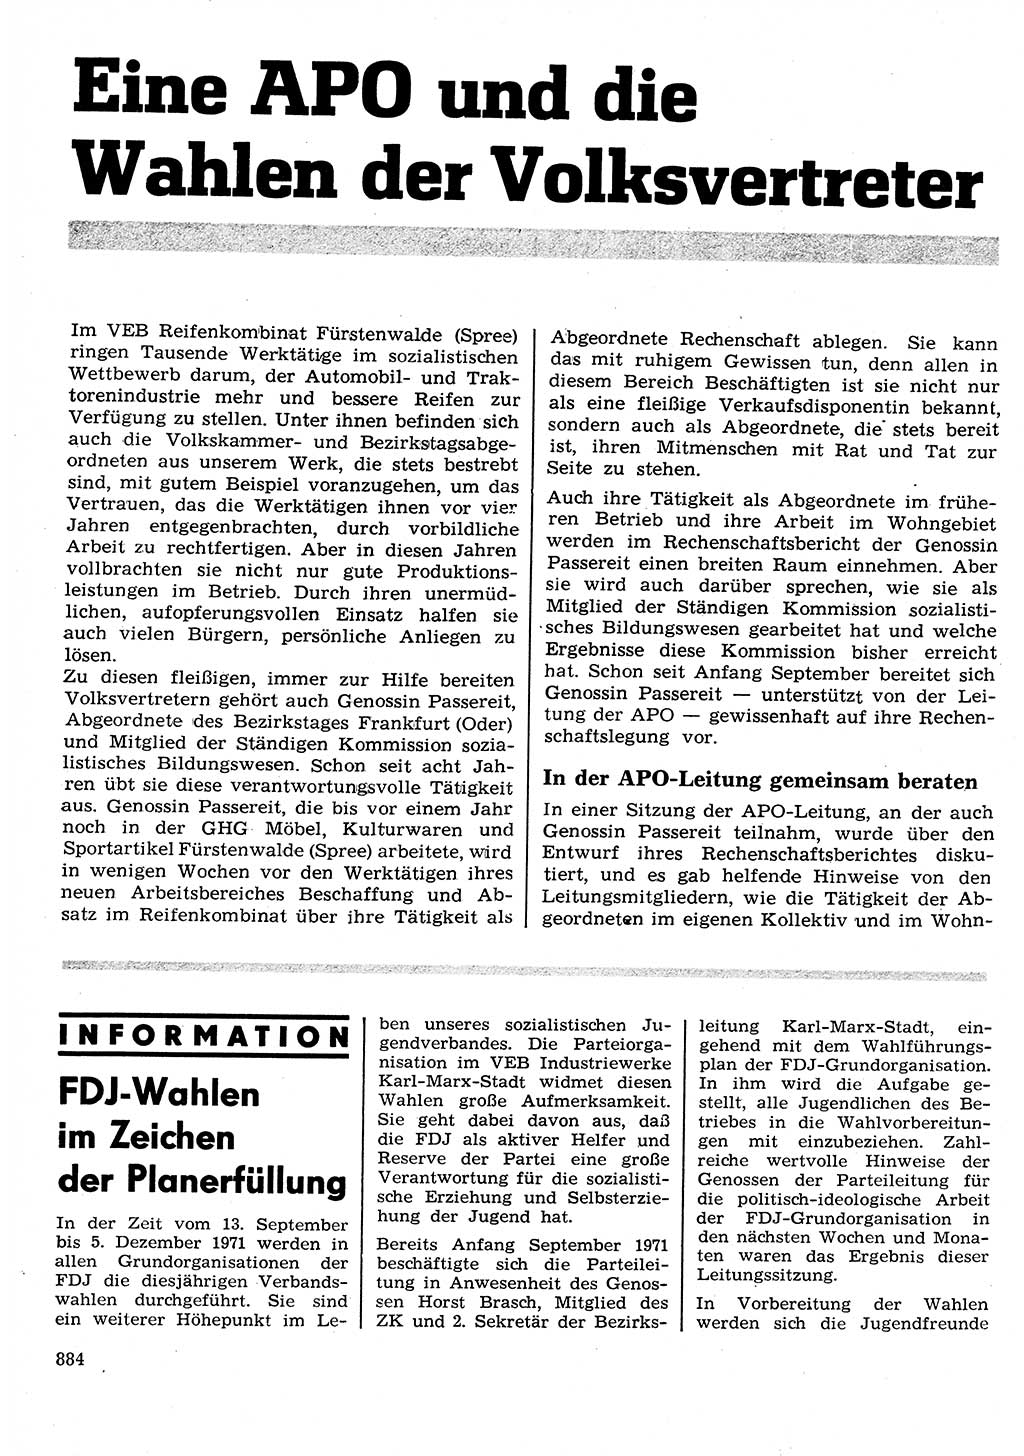 Neuer Weg (NW), Organ des Zentralkomitees (ZK) der SED (Sozialistische Einheitspartei Deutschlands) für Fragen des Parteilebens, 26. Jahrgang [Deutsche Demokratische Republik (DDR)] 1971, Seite 884 (NW ZK SED DDR 1971, S. 884)